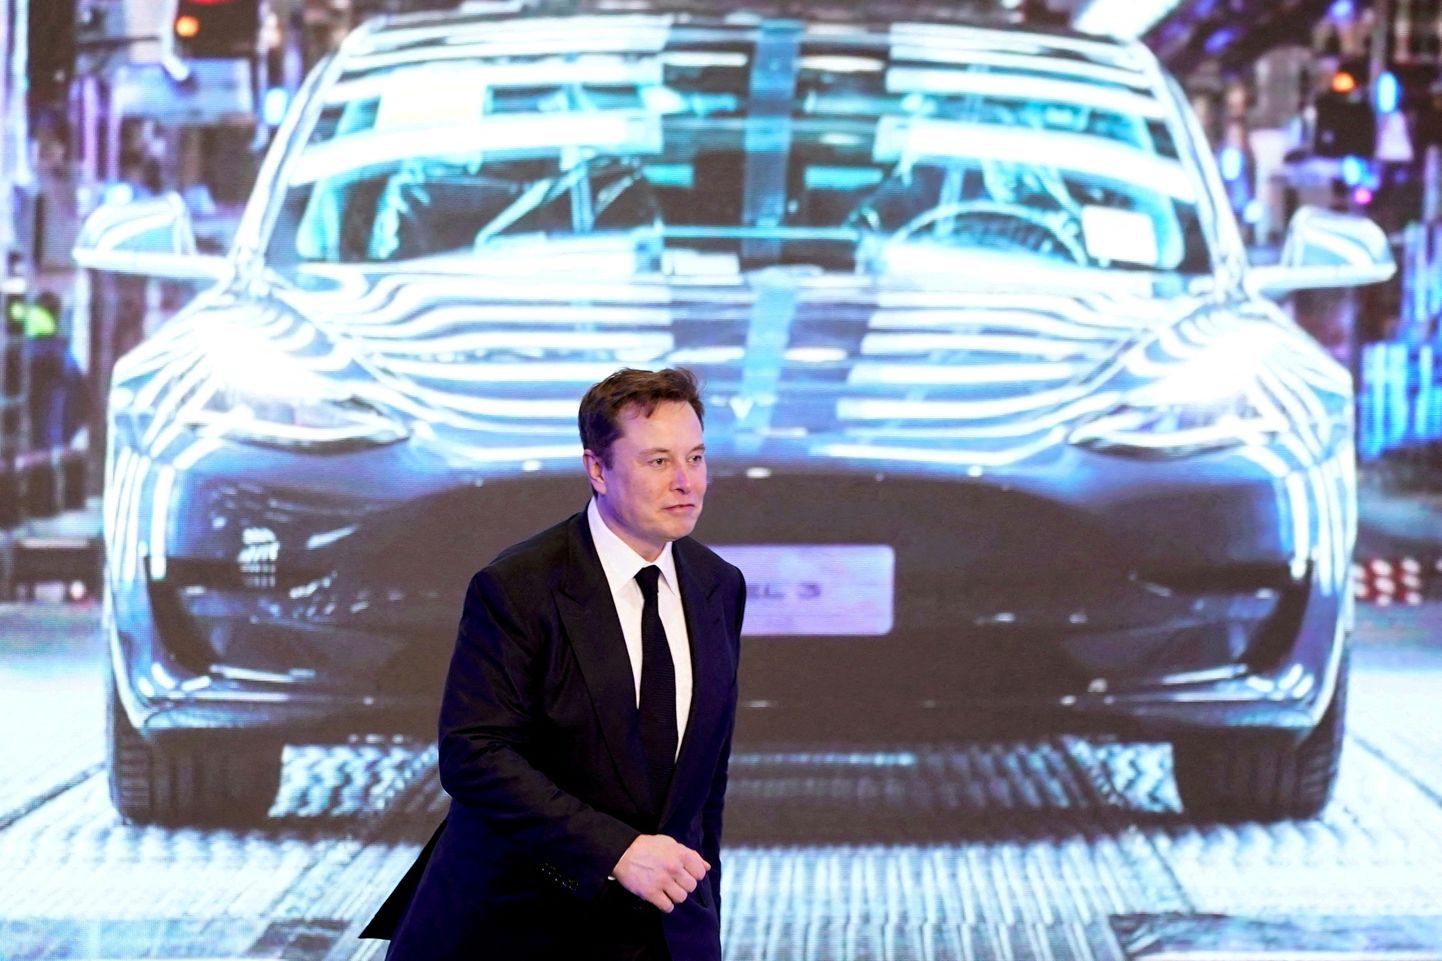 ASV elektromobiļu ražošanas uzņēmuma "Tesla Motors" īpašnieks un vadītājs Īlons Masks